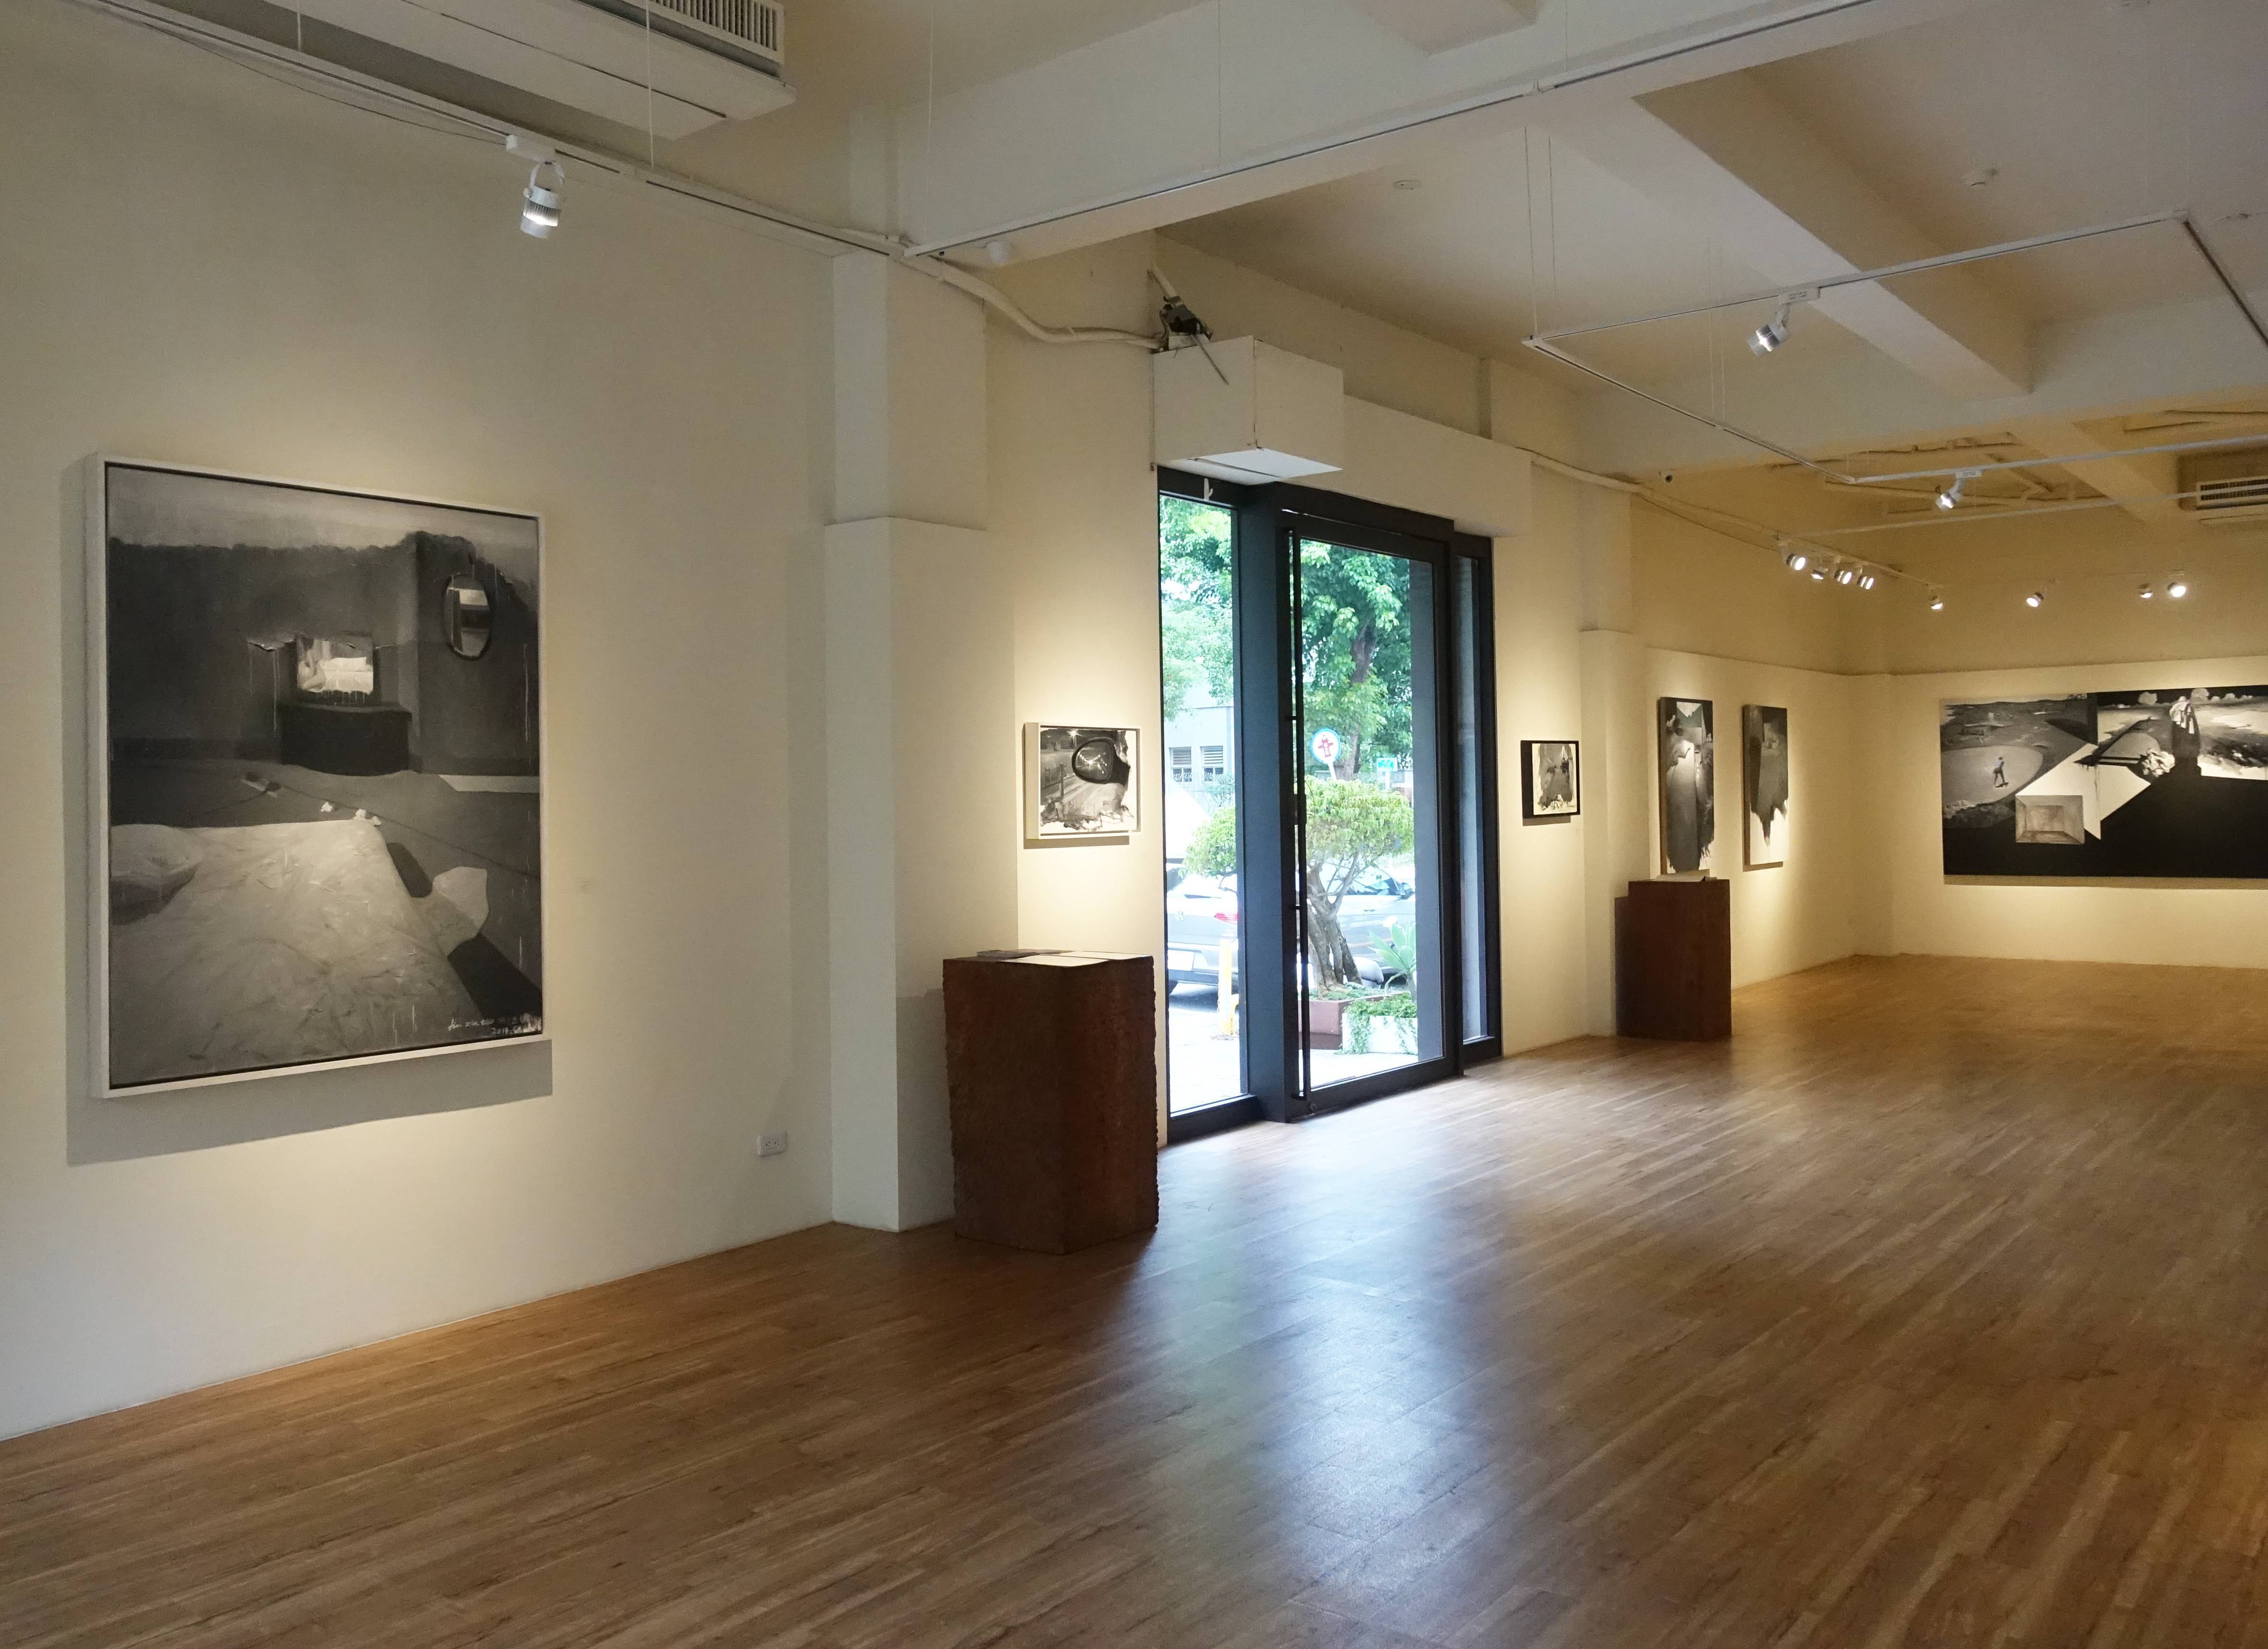 甘樂阿舍美術館劉芯濤個展《盜夢者》展覽空間。